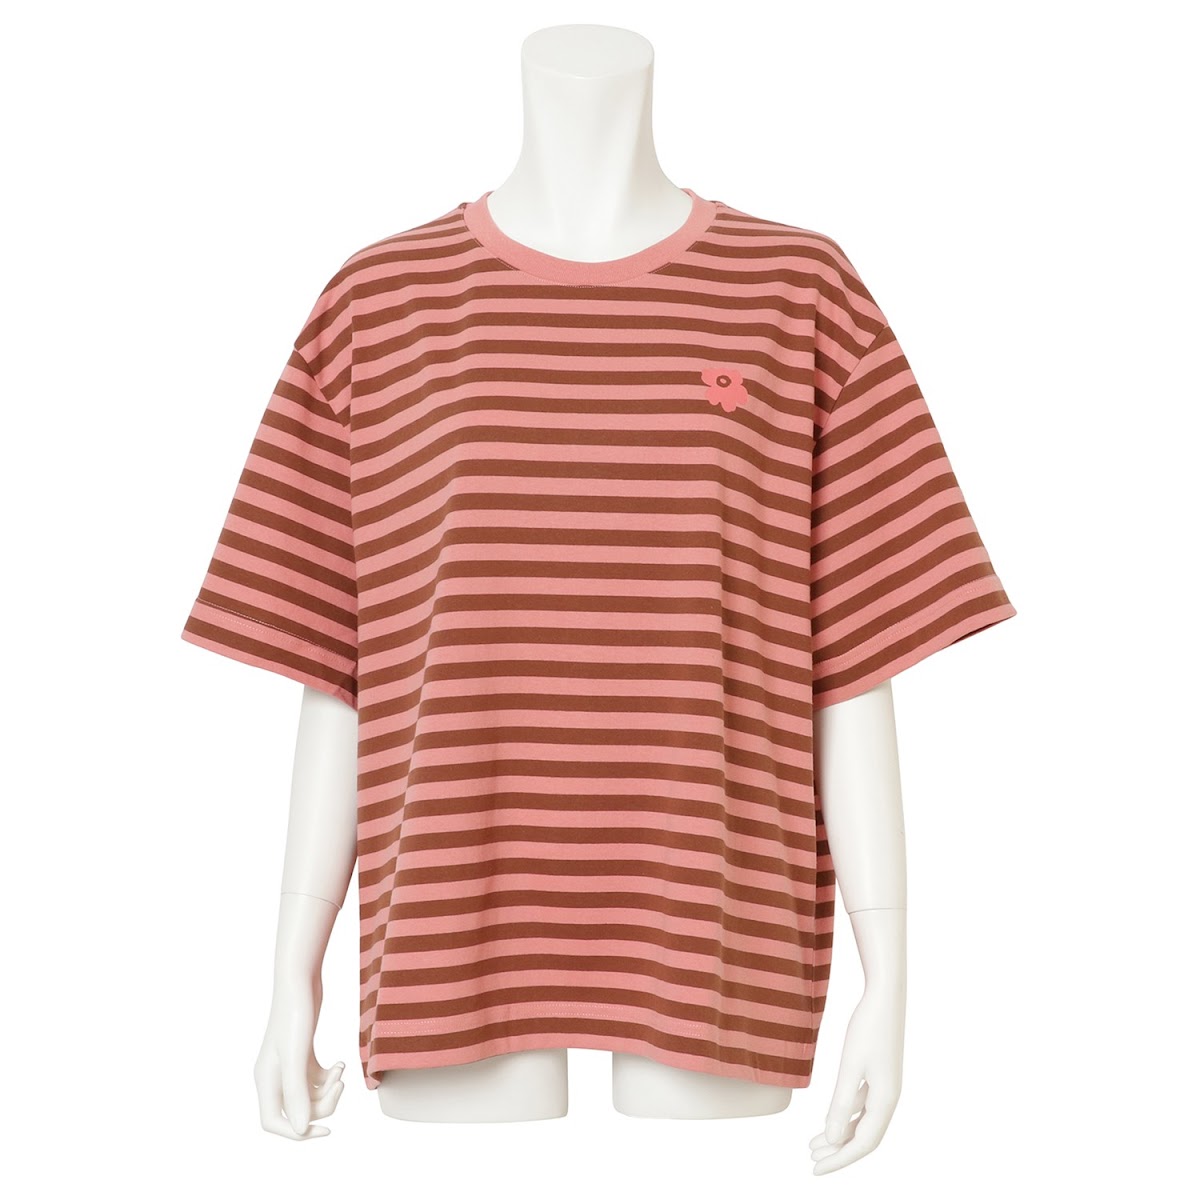 マリメッコ MARIMEKKO / Tildra Tasaraita Unikko T-Shirt Tシャツ Mサイズ #091126 846 M